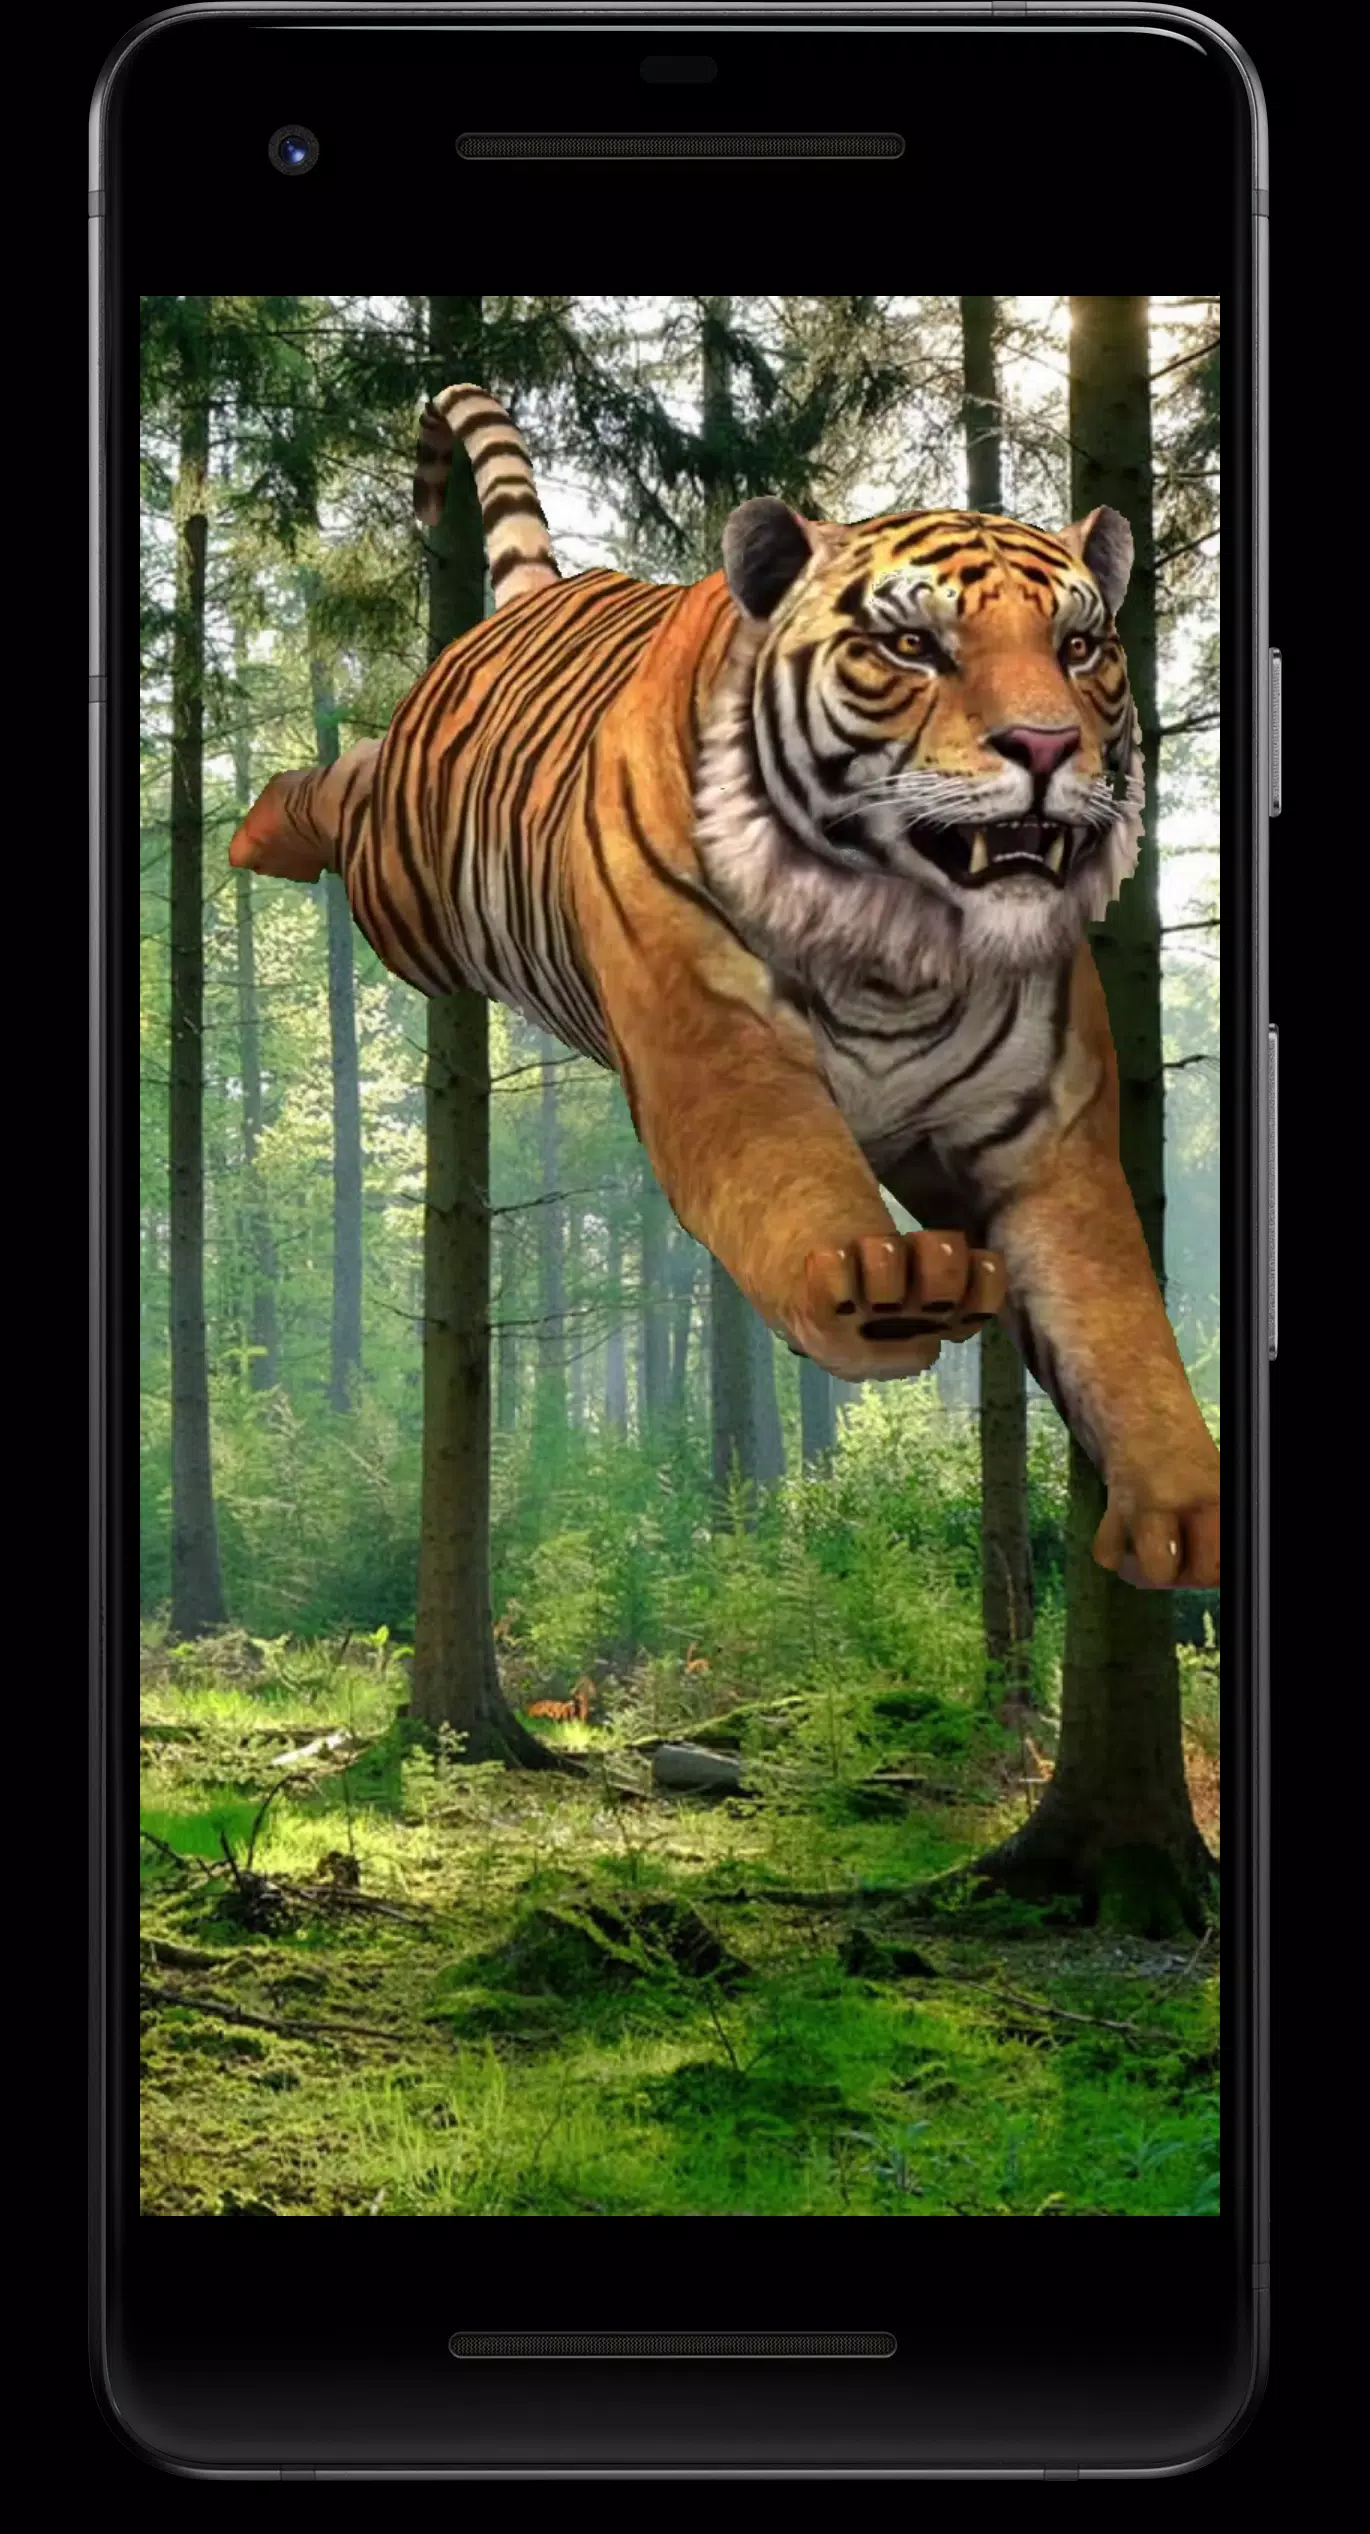 Tiger: Hình ảnh về con hổ sẽ làm say mê bất kì ai, bởi vẻ đẹp hoang dã của nó và sức mạnh phi thường. Hãy xem để tìm hiểu thêm về chúng và cảm nhận trọn vẹn sự tuyệt vời của tự nhiên.